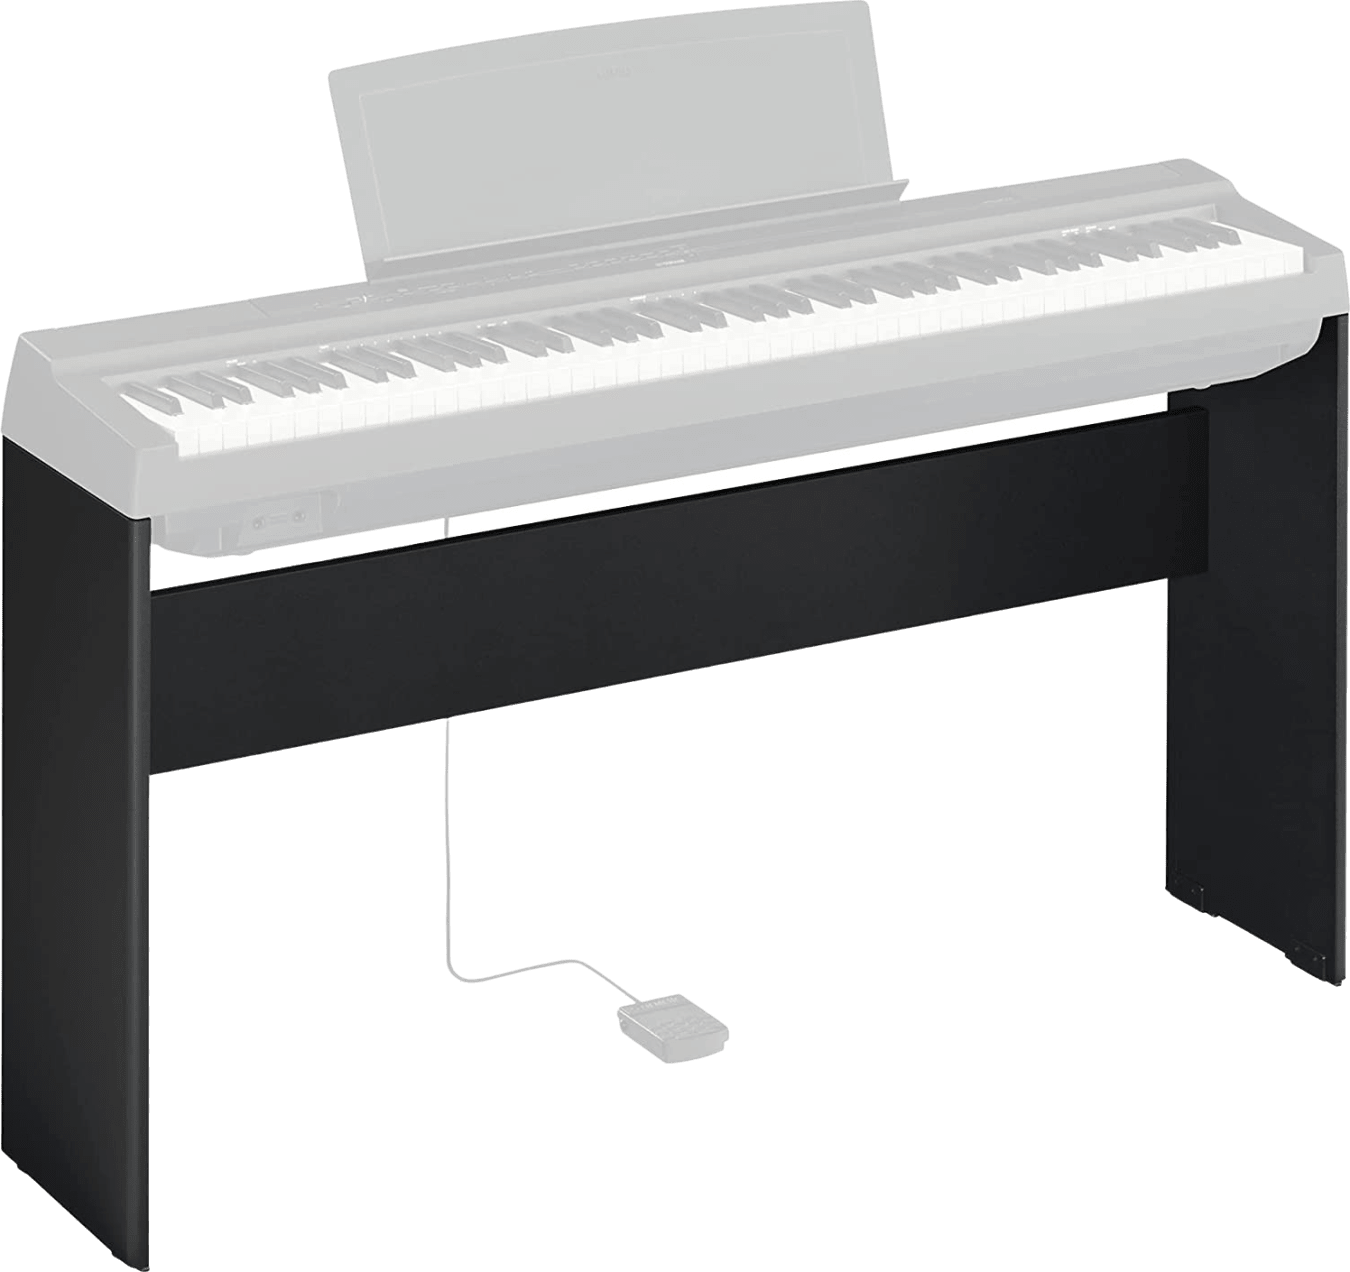 Yamaha L-125 standaard voor P-125 digitale piano